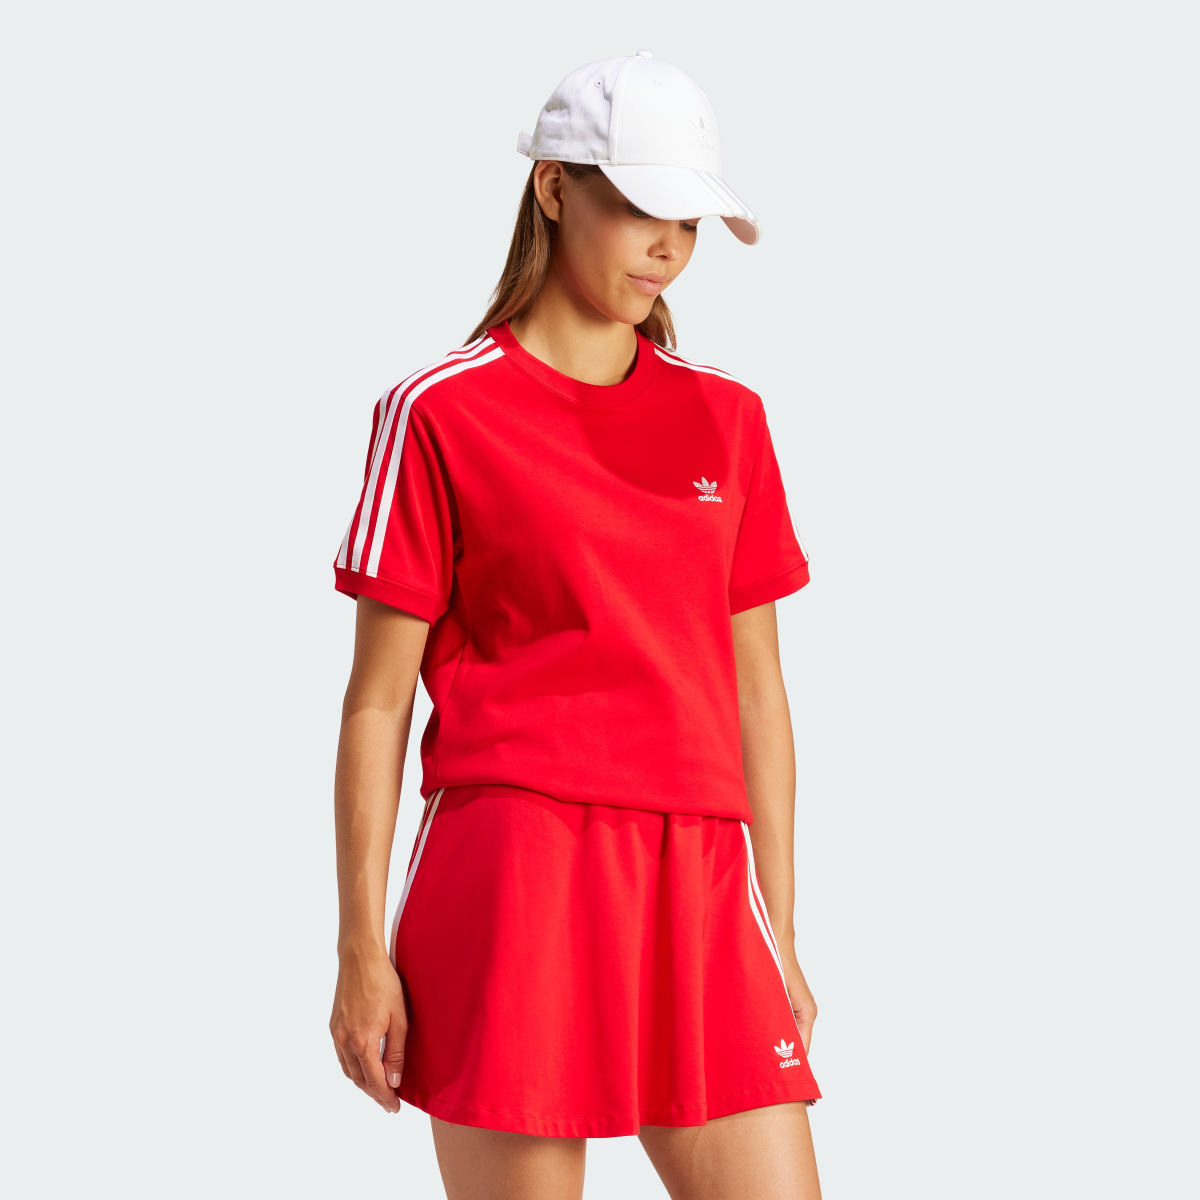 Adidas 3-Stripes T-Shirt. 4